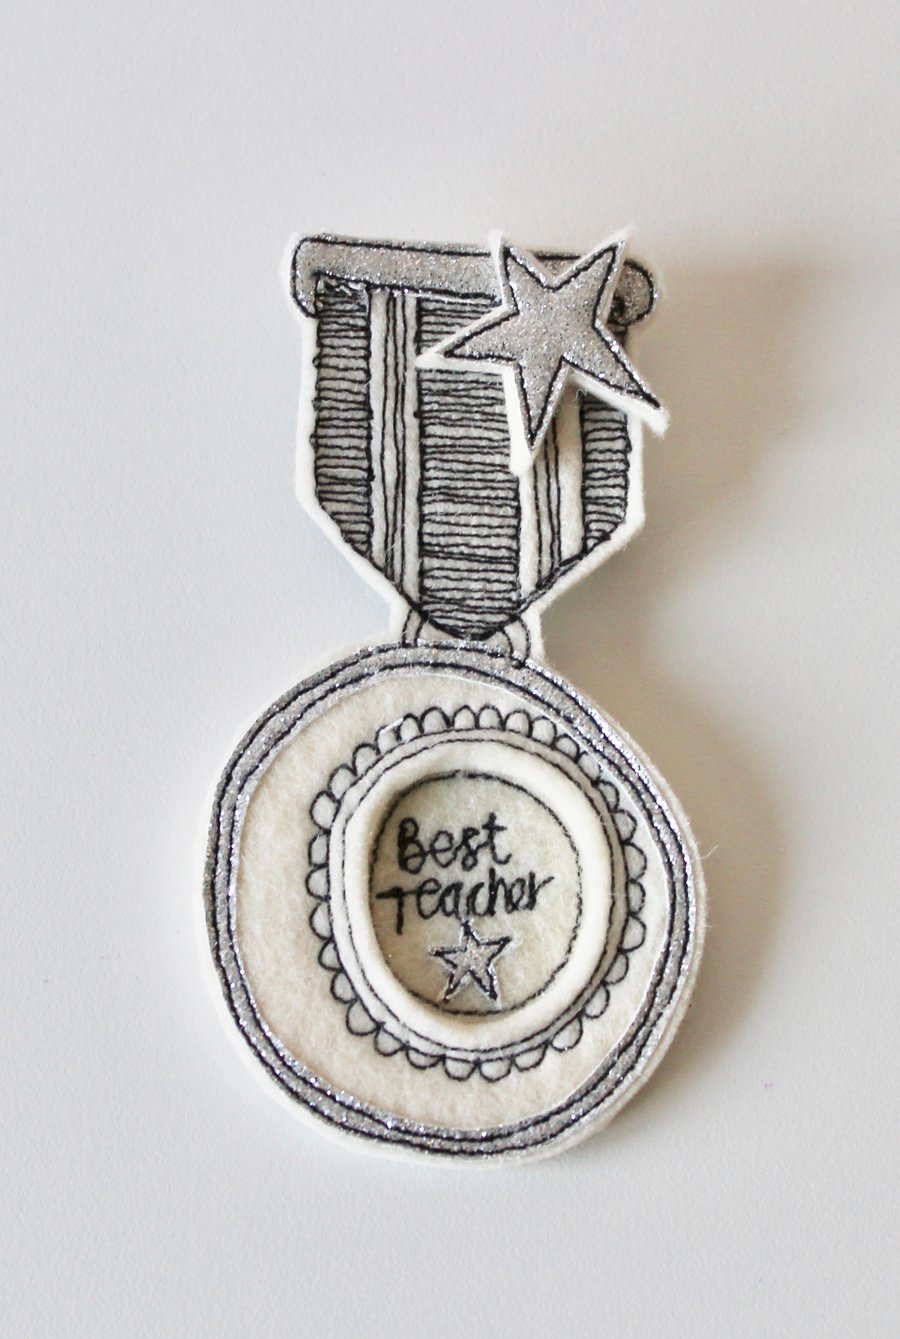 'Best Teacher' - Reward Brooch